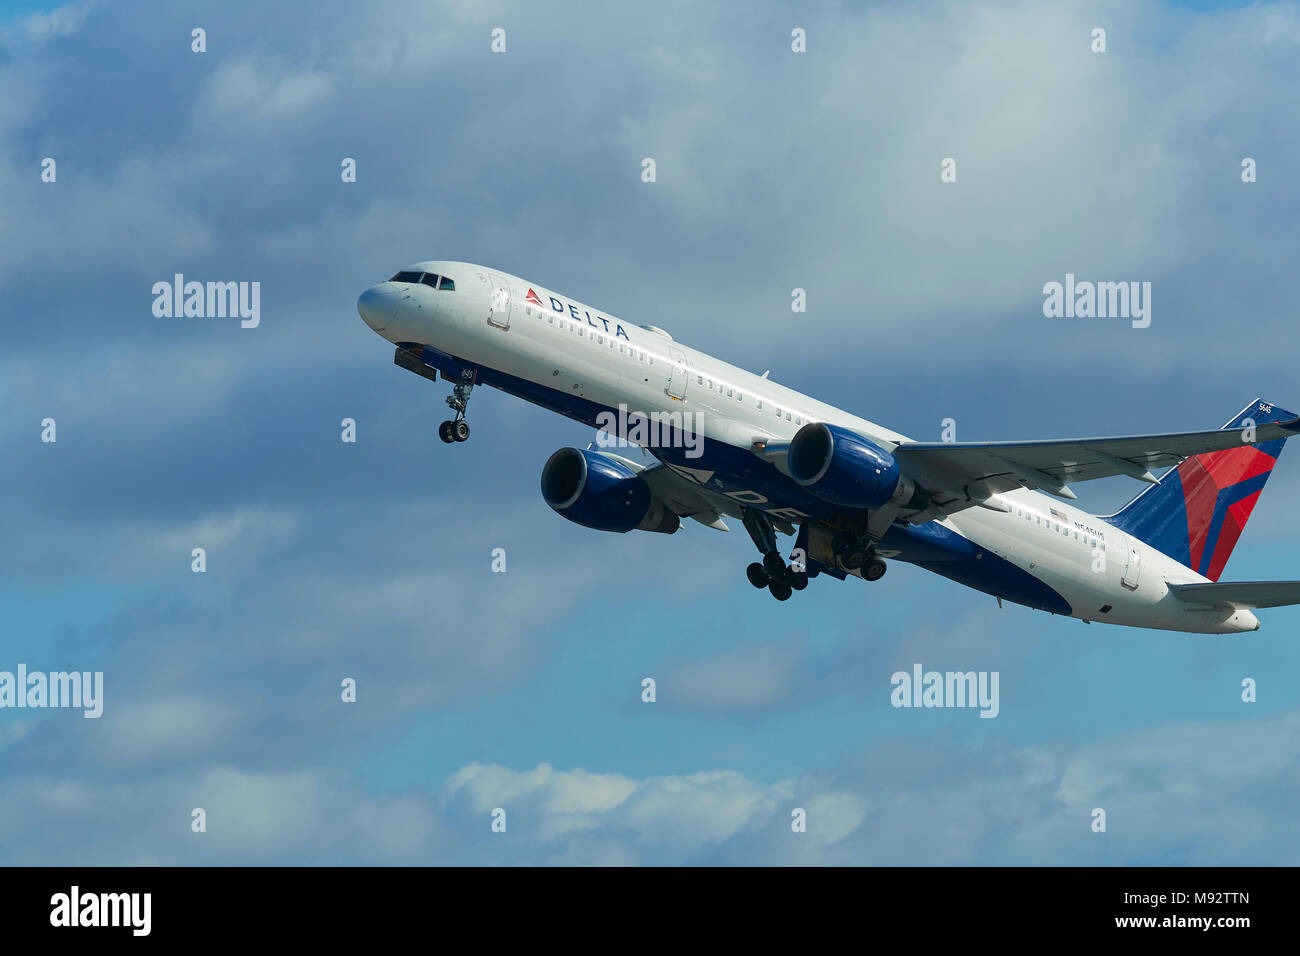 Delta Air Lines Boeing 757 aereo Jet, arrampicata di distanza dall'Aeroporto Internazionale di Los Angeles LAX, California, Stati Uniti d'America. Foto Stock